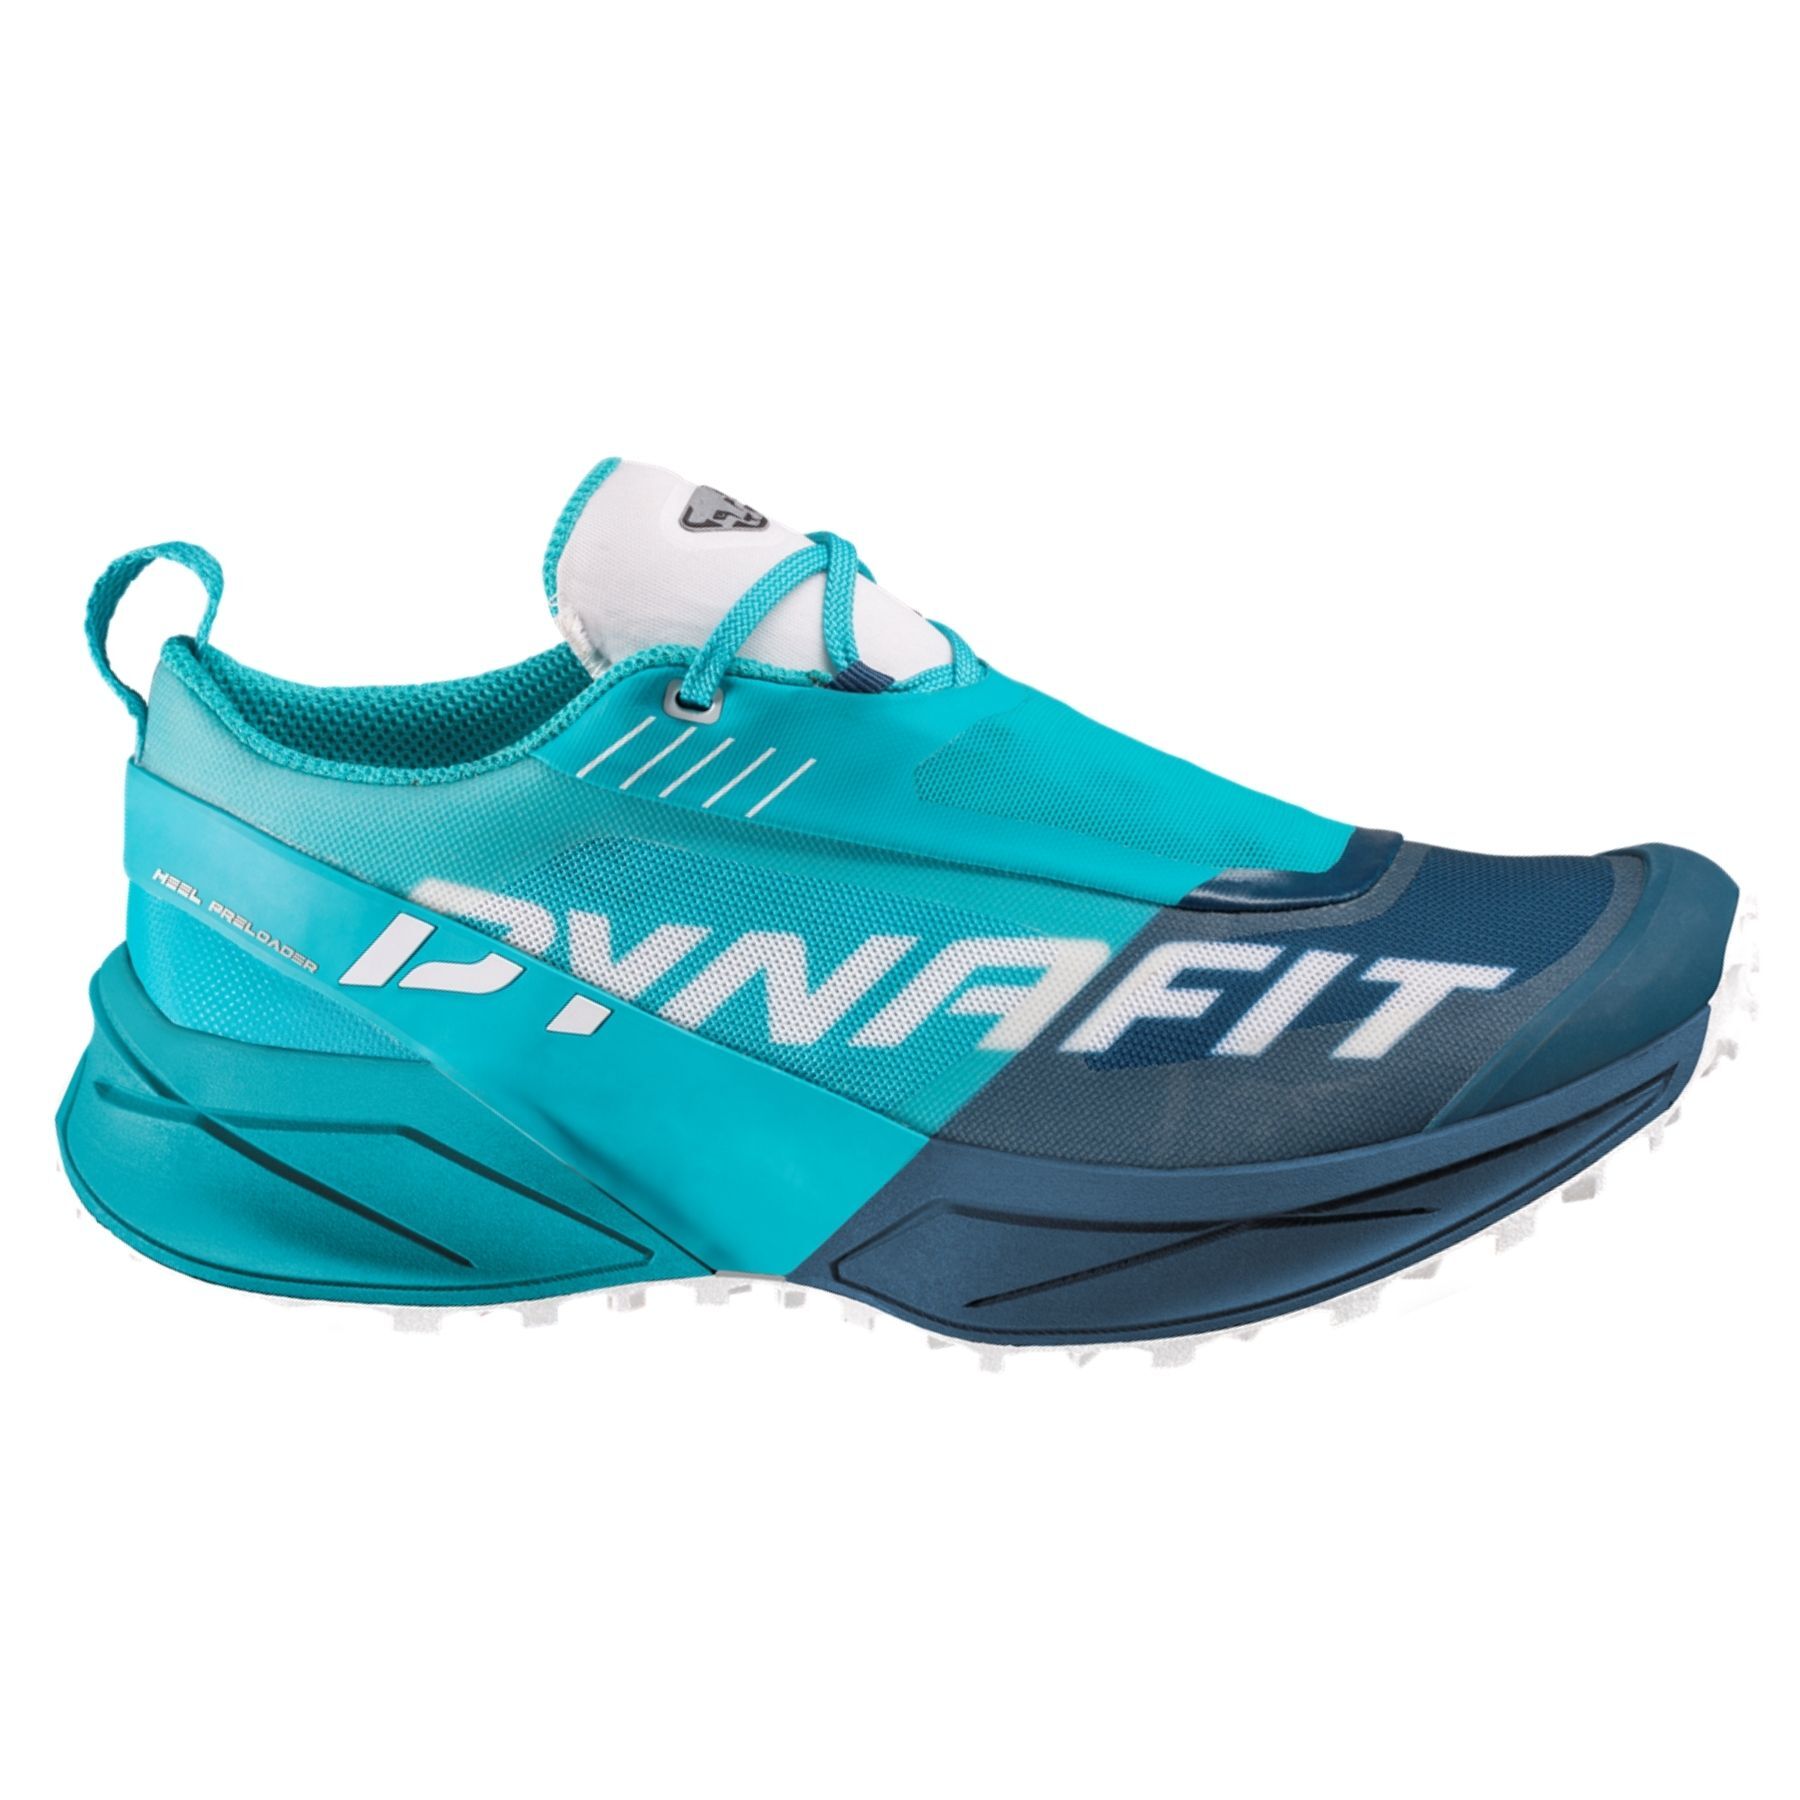 Dynafit Ultra 100 - TrailLaufschuhe - Damen